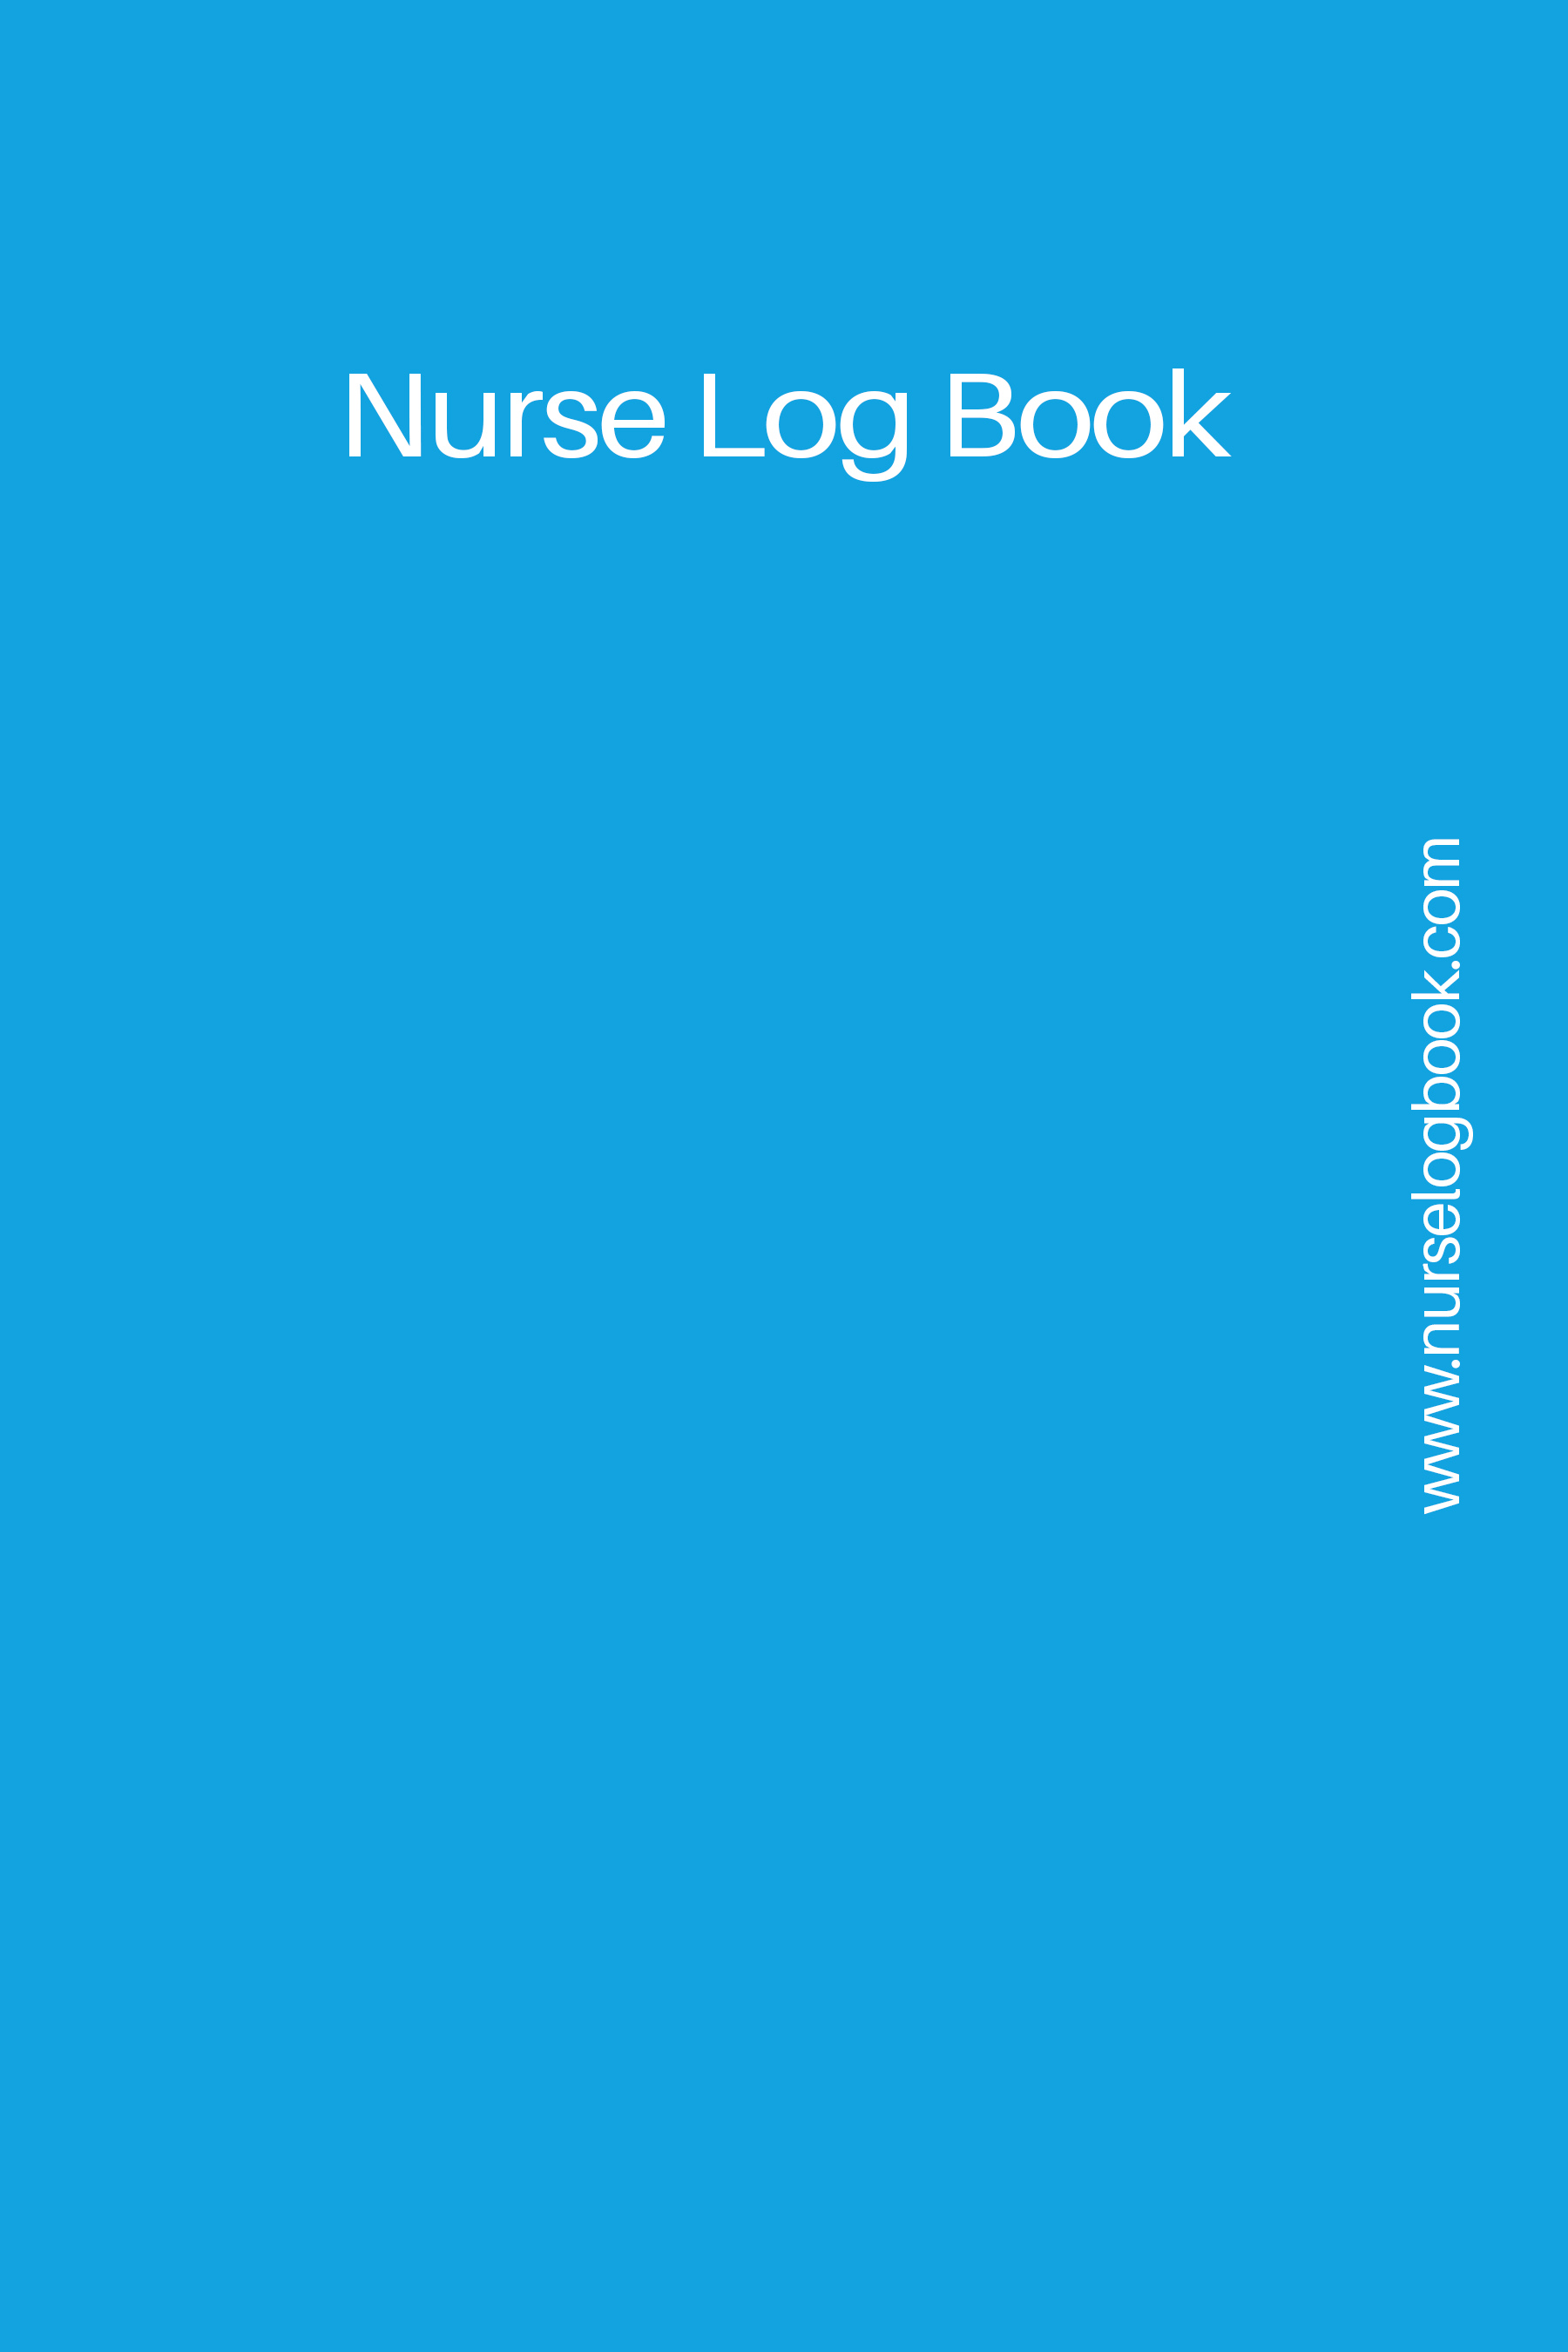 Nurse Log Book Cover 2